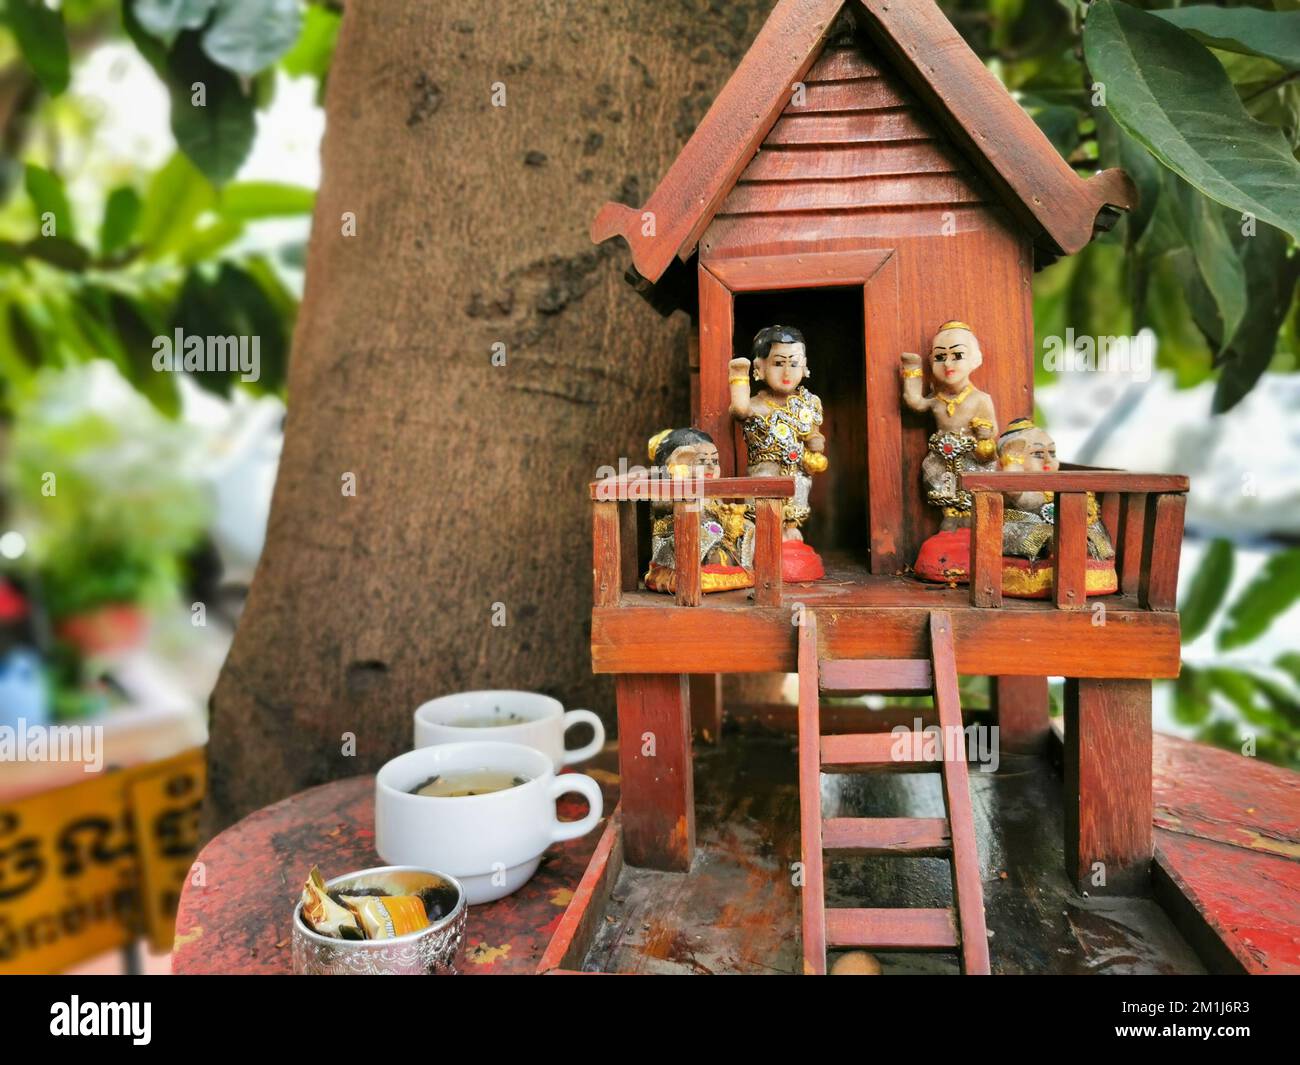 Sanctuaire cambodgien. Une maison en bois d'esprit traditionnel pour le culte et la croyance spirituelle. Religion et culture bouddhistes à Phnom Penh, Cambodge. Banque D'Images